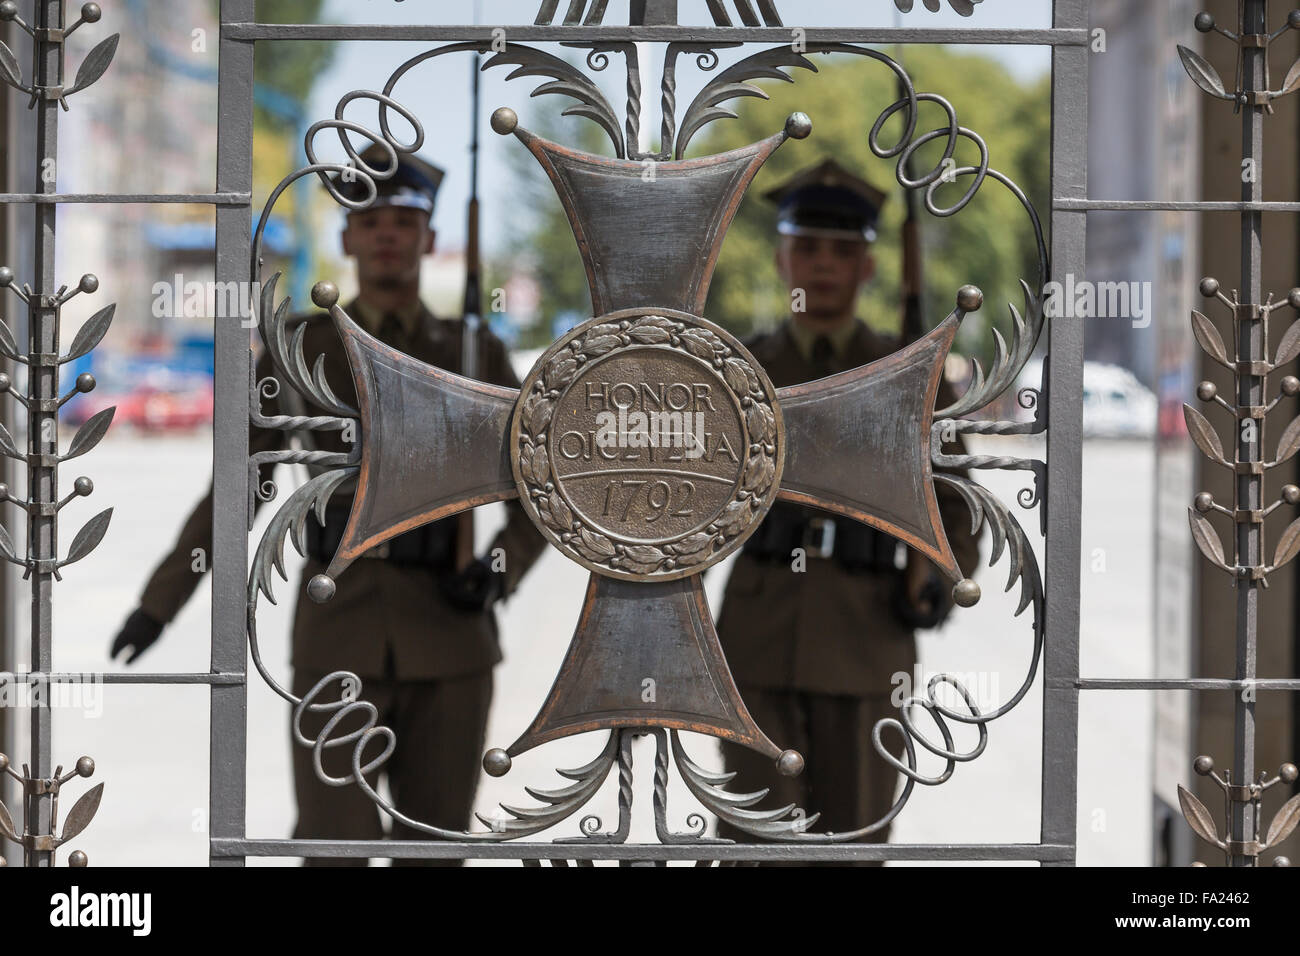 Varsavia, Polonia - Luglio, 08: la tomba del Milite Ignoto in Piazza Pilsudski, il 08 luglio, 2015. Tomba della sconosciuta con etern Foto Stock